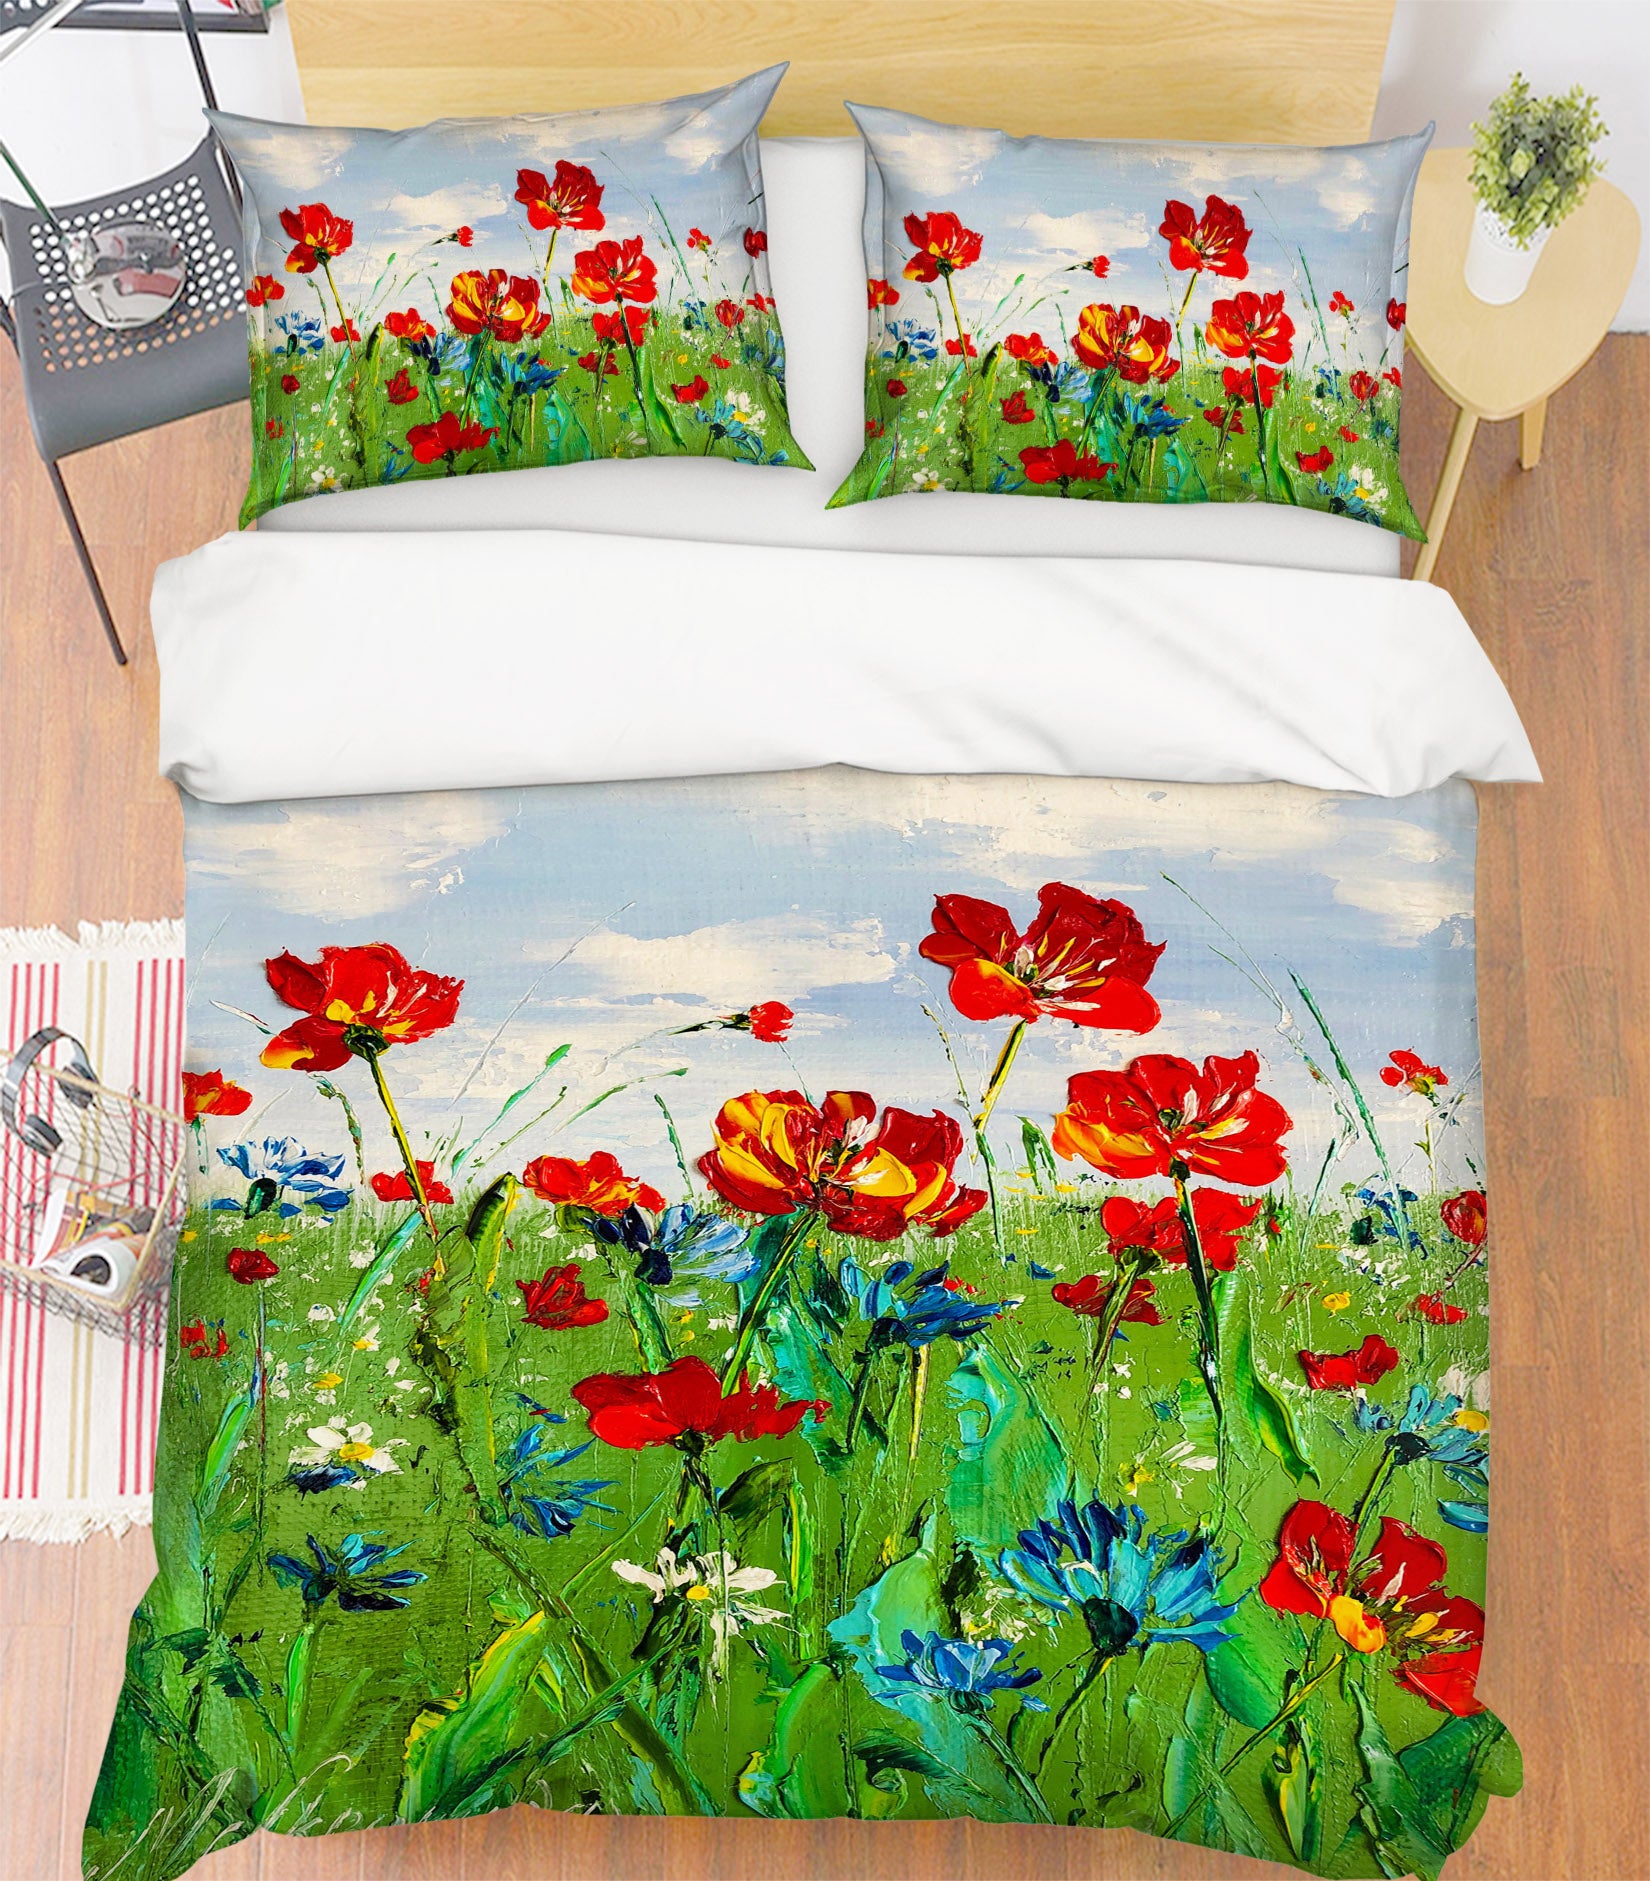 3D Red Flower Grass 616 Skromova Marina Bedding Bed Pillowcases Quilt